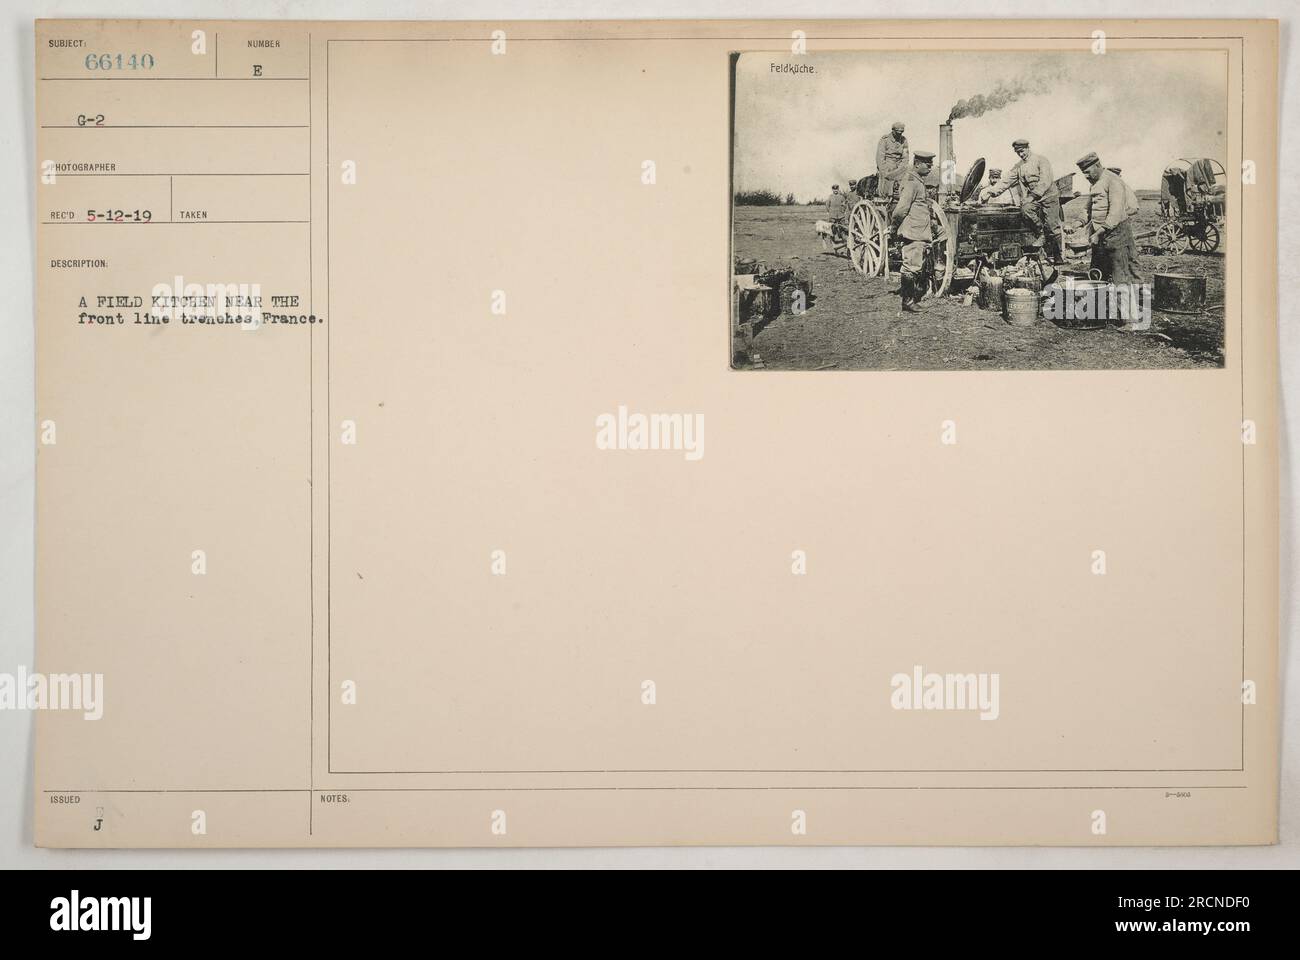 Une cuisine de campagne près des tranchées de première ligne en France pendant la première Guerre mondiale. La photographie a été prise le 5-12-19 et est étiquetée comme 188LED NUMB A. les notes pour cette image mentionnent 'Peldkiche'. Banque D'Images